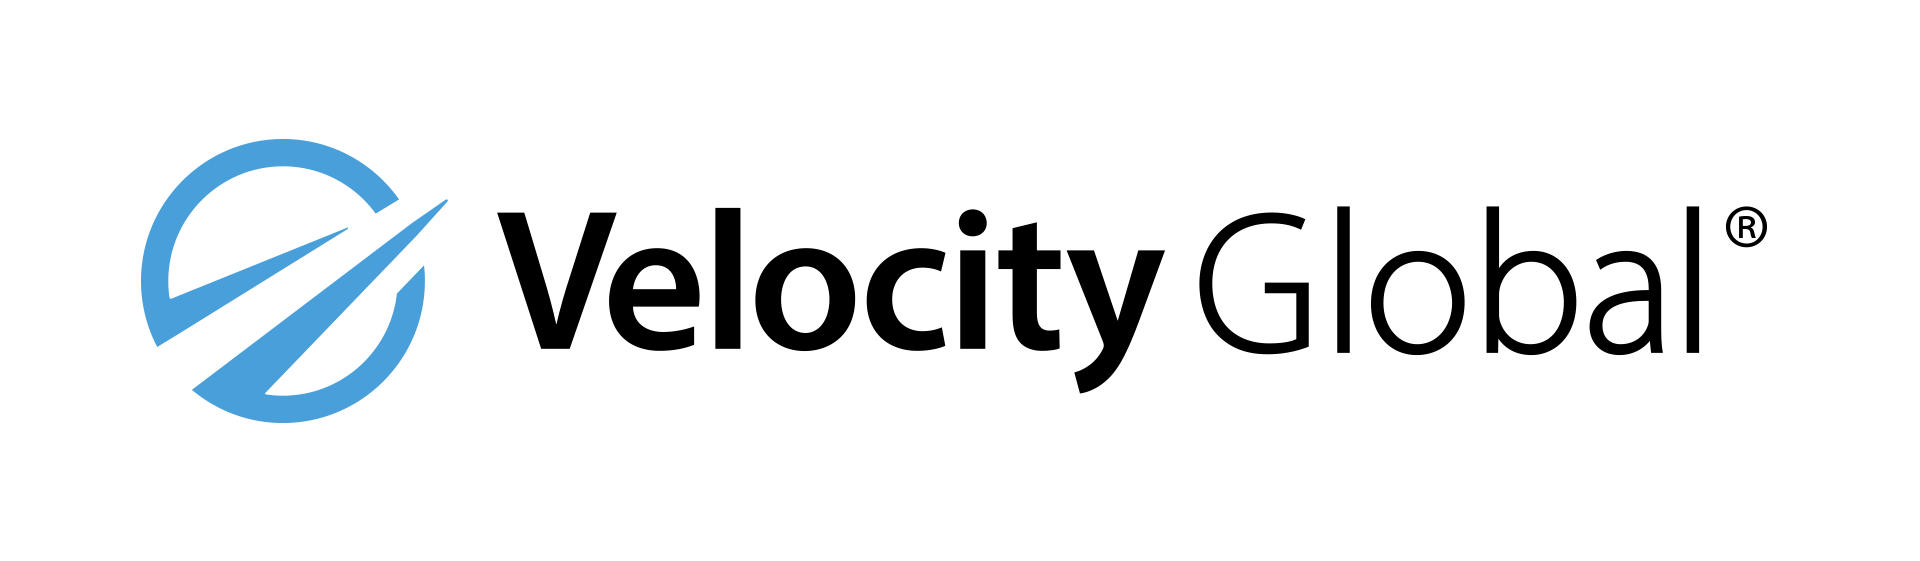 Velocity Global Company Logo